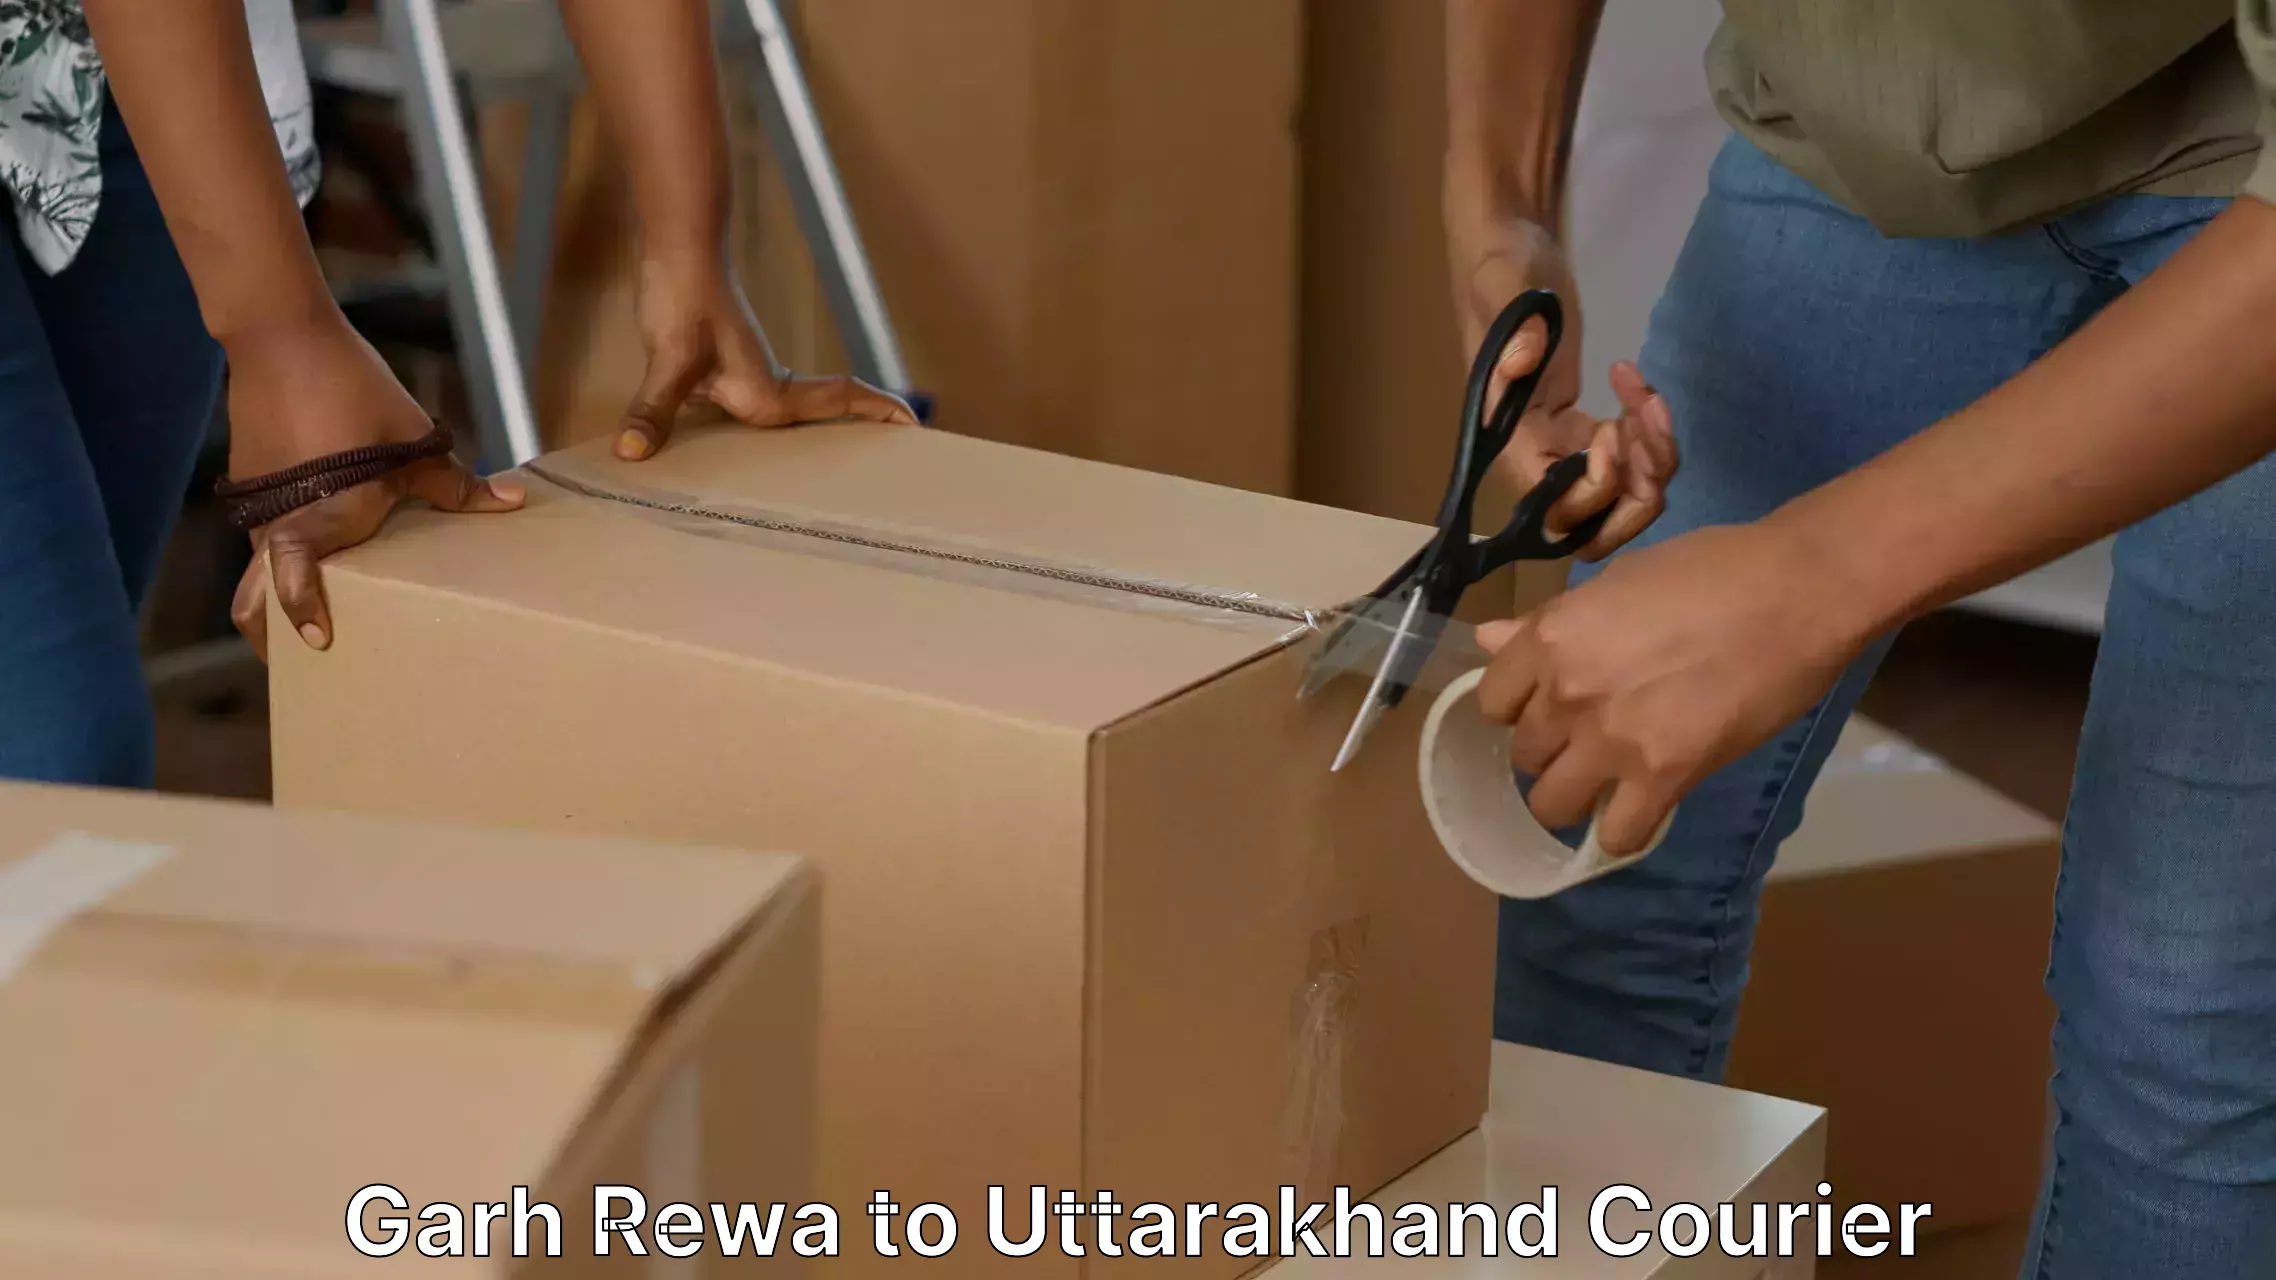 Furniture transport specialists Garh Rewa to Uttarakhand